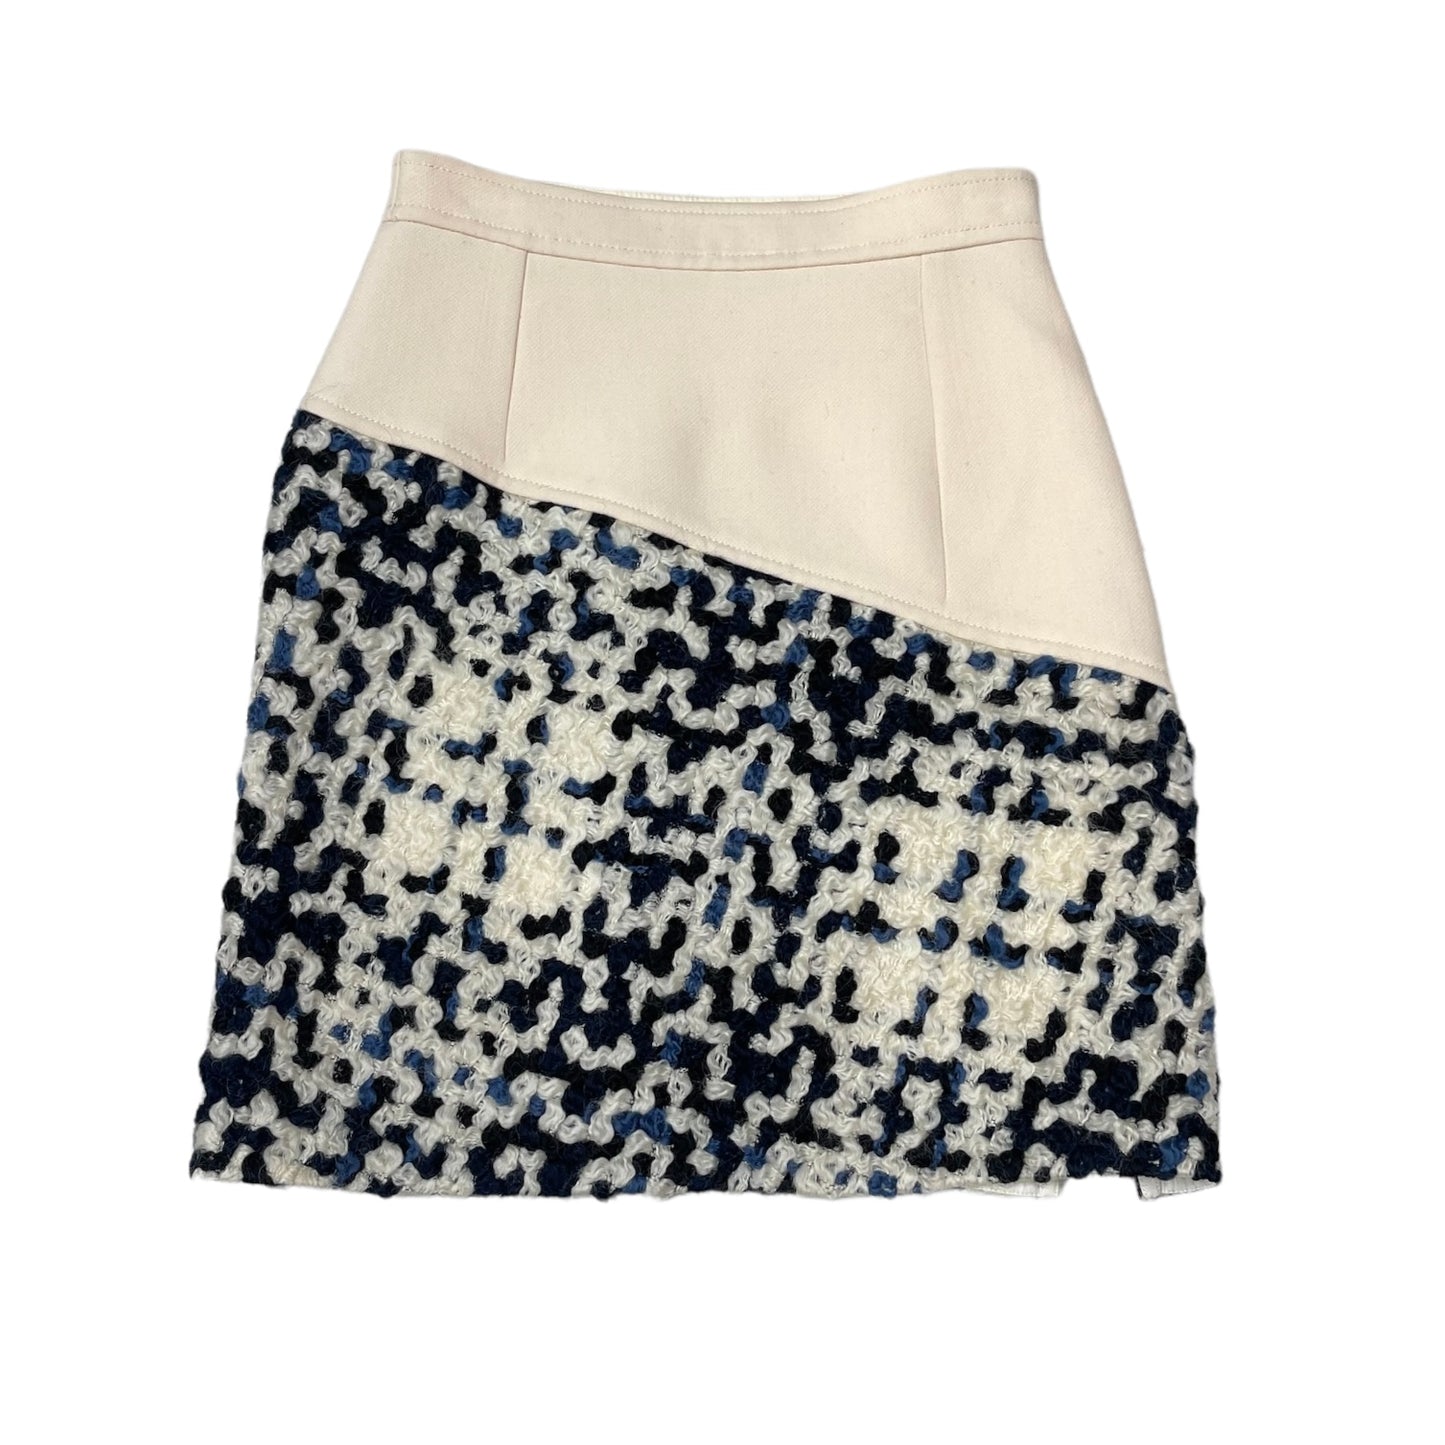 Beige Wool Skirt with Tweed - S